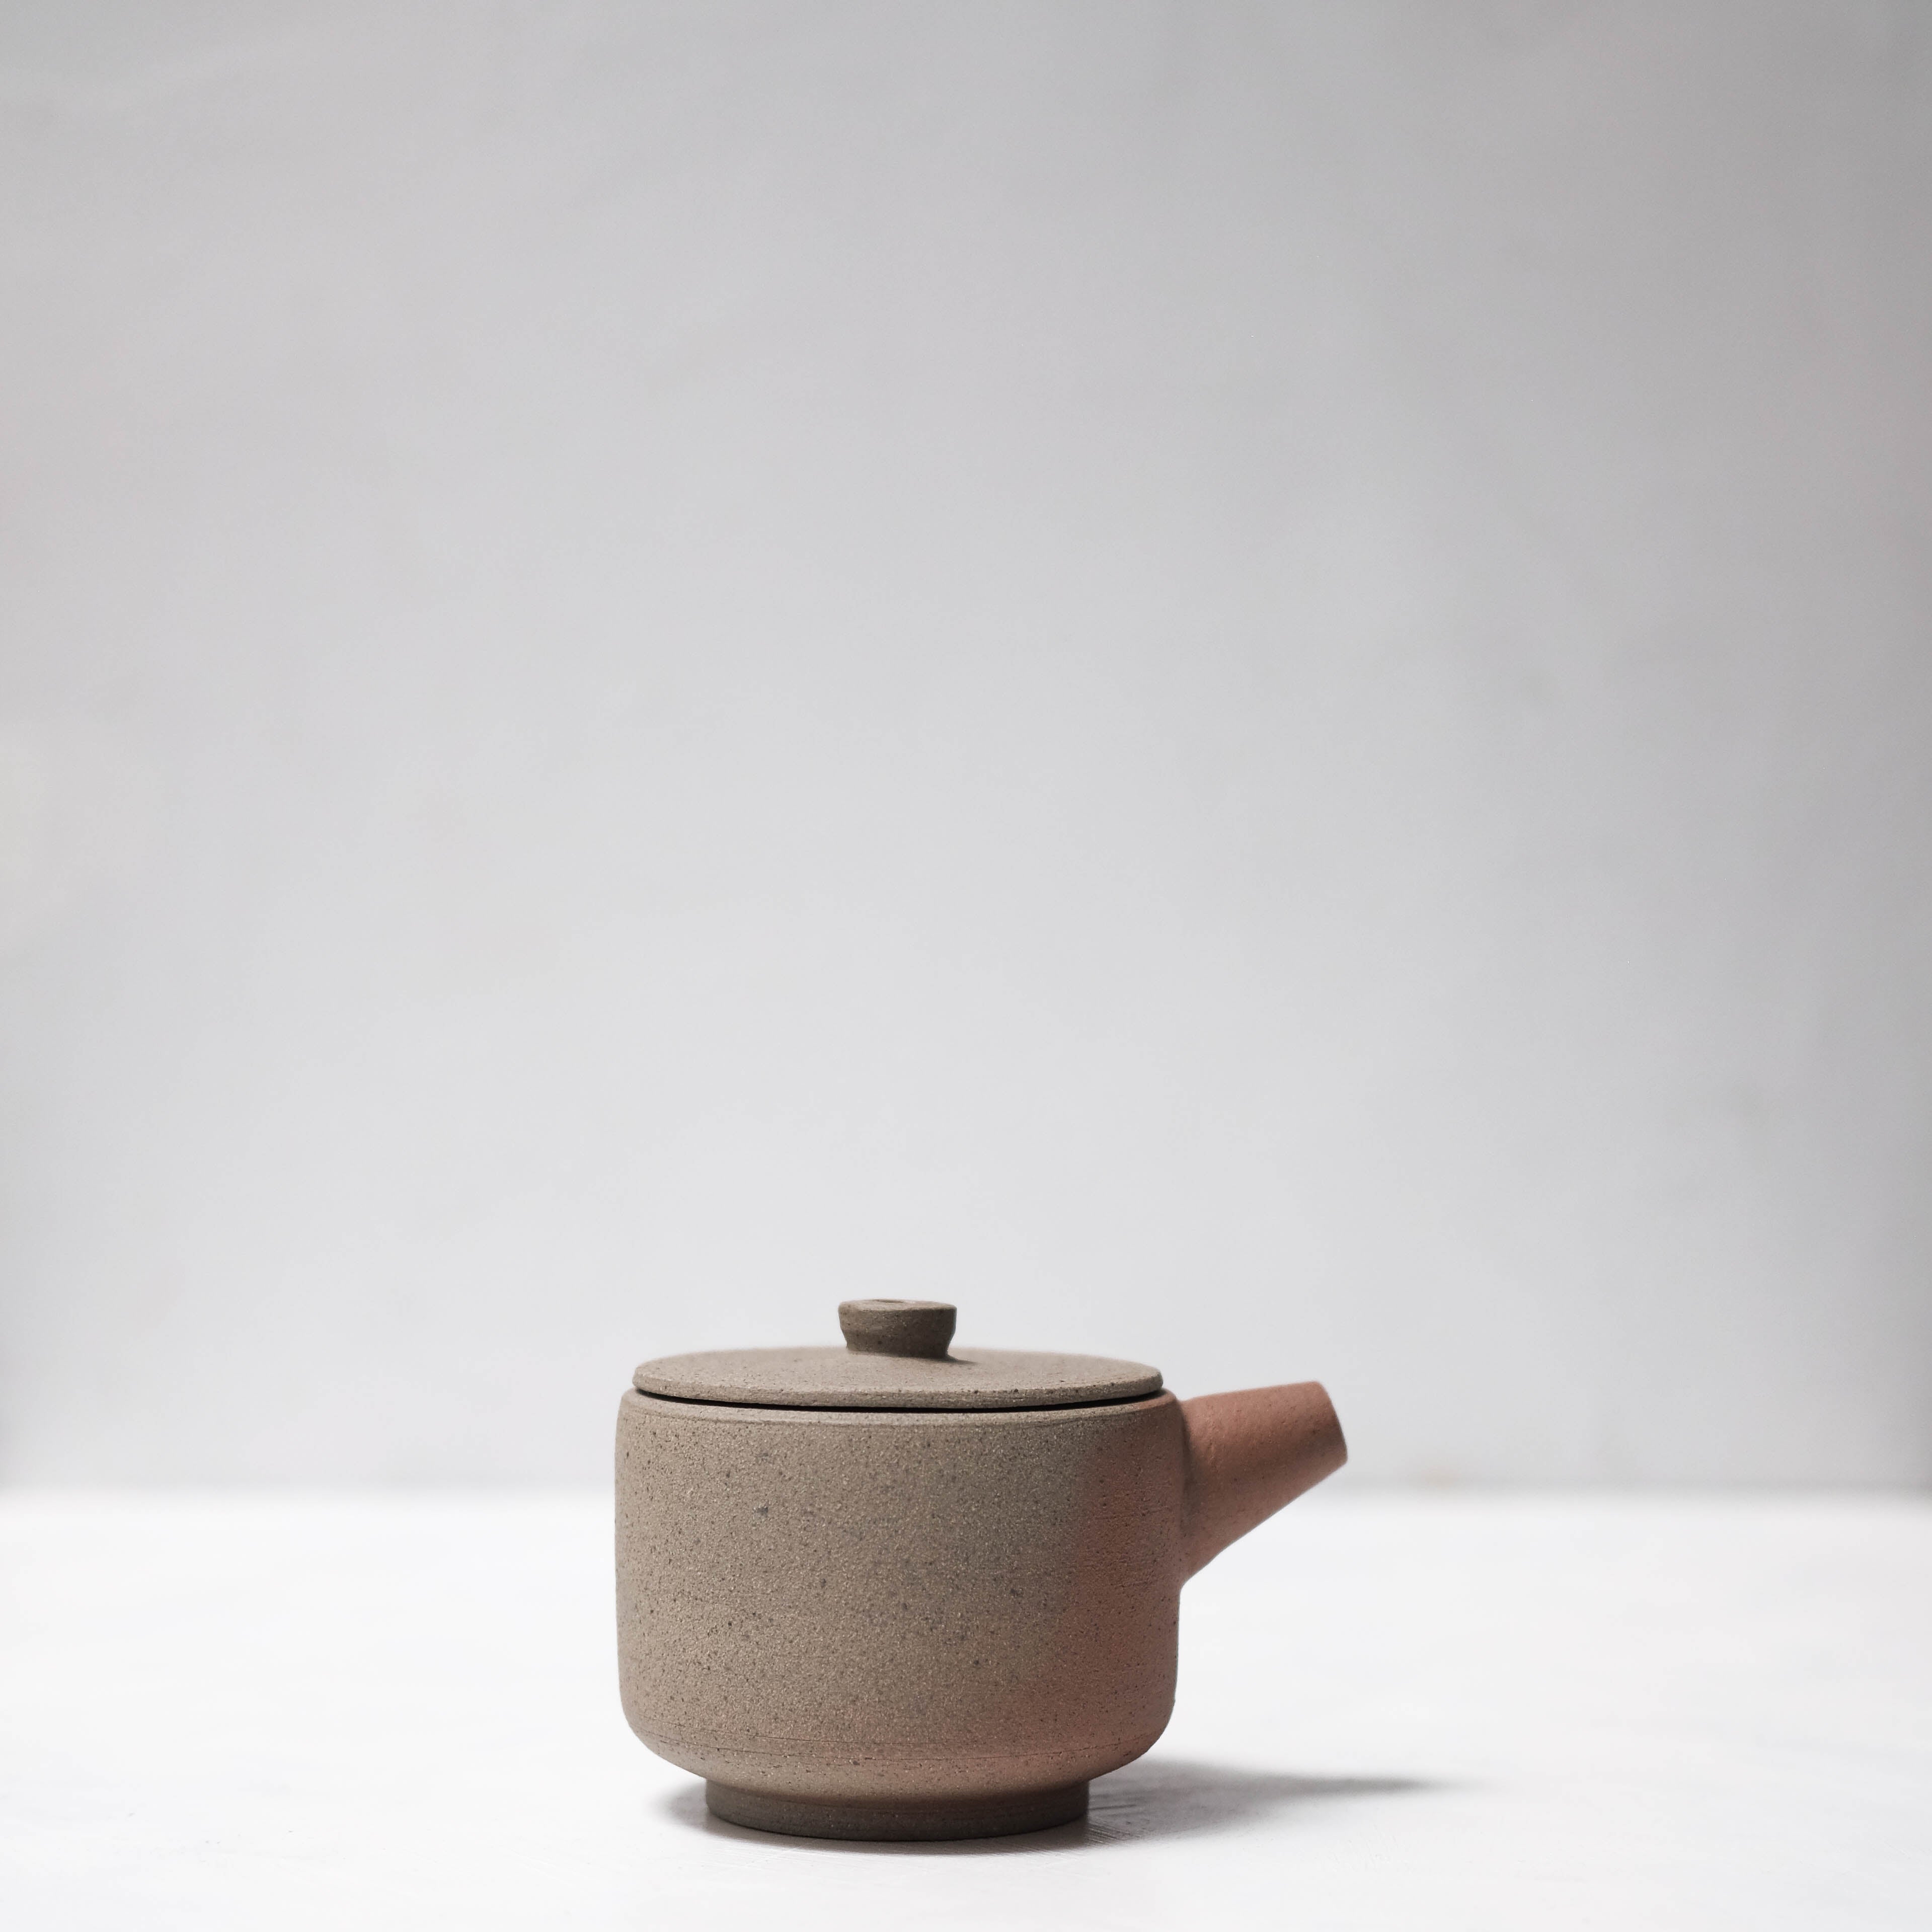 Haigusuri (灰釉) Teapot #ASH51